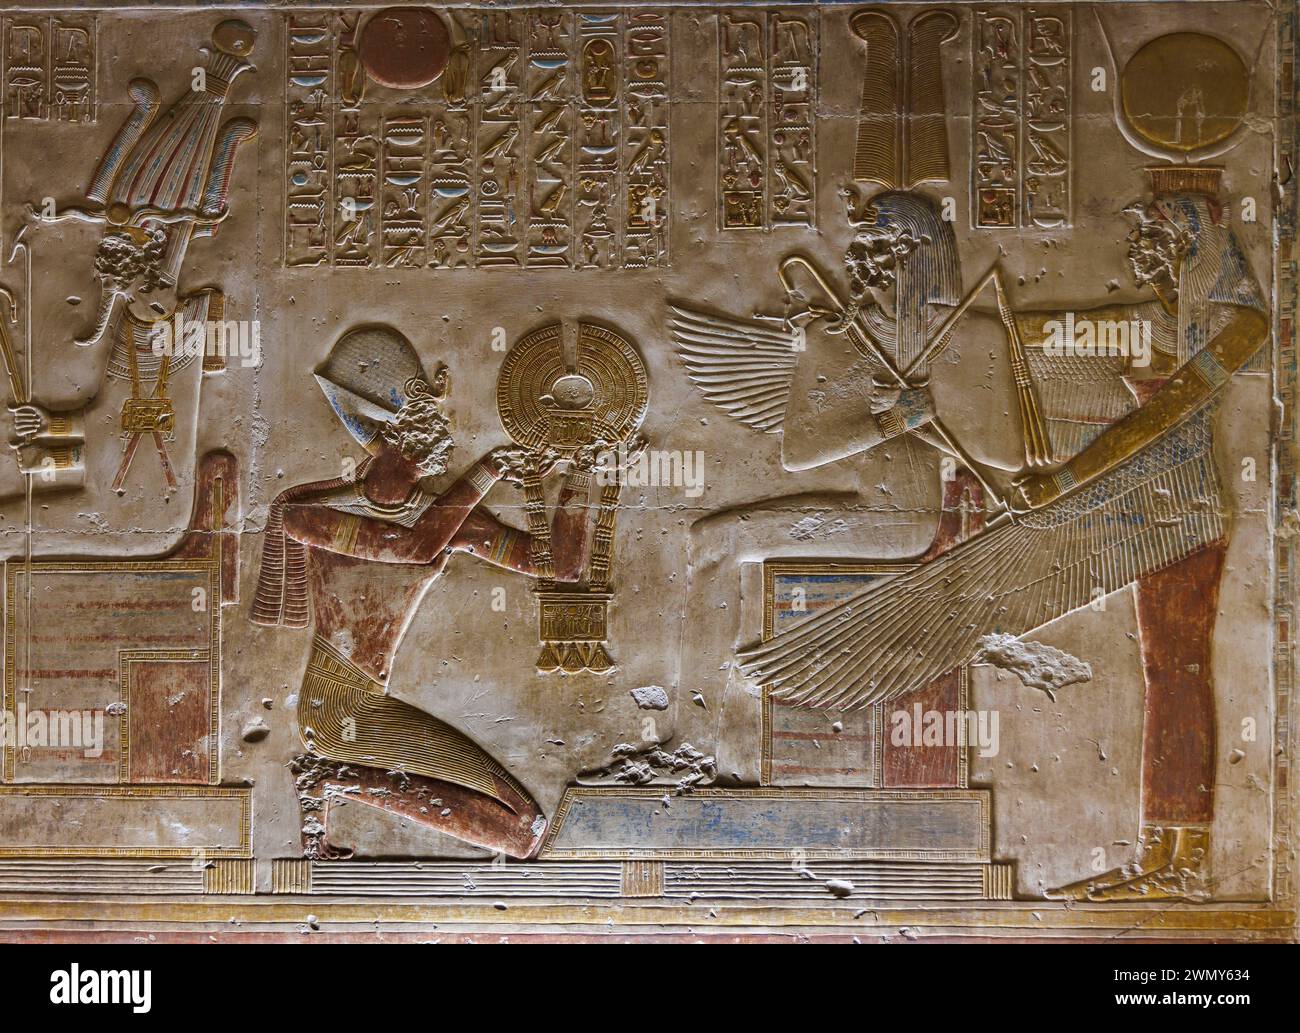 Egitto, Sohag, Abydos, città di pellegrinaggio dei faraoni dichiarata Patrimonio dell'Umanità dall'UNESCO, tempio di Seti i, bassorilievo Foto Stock